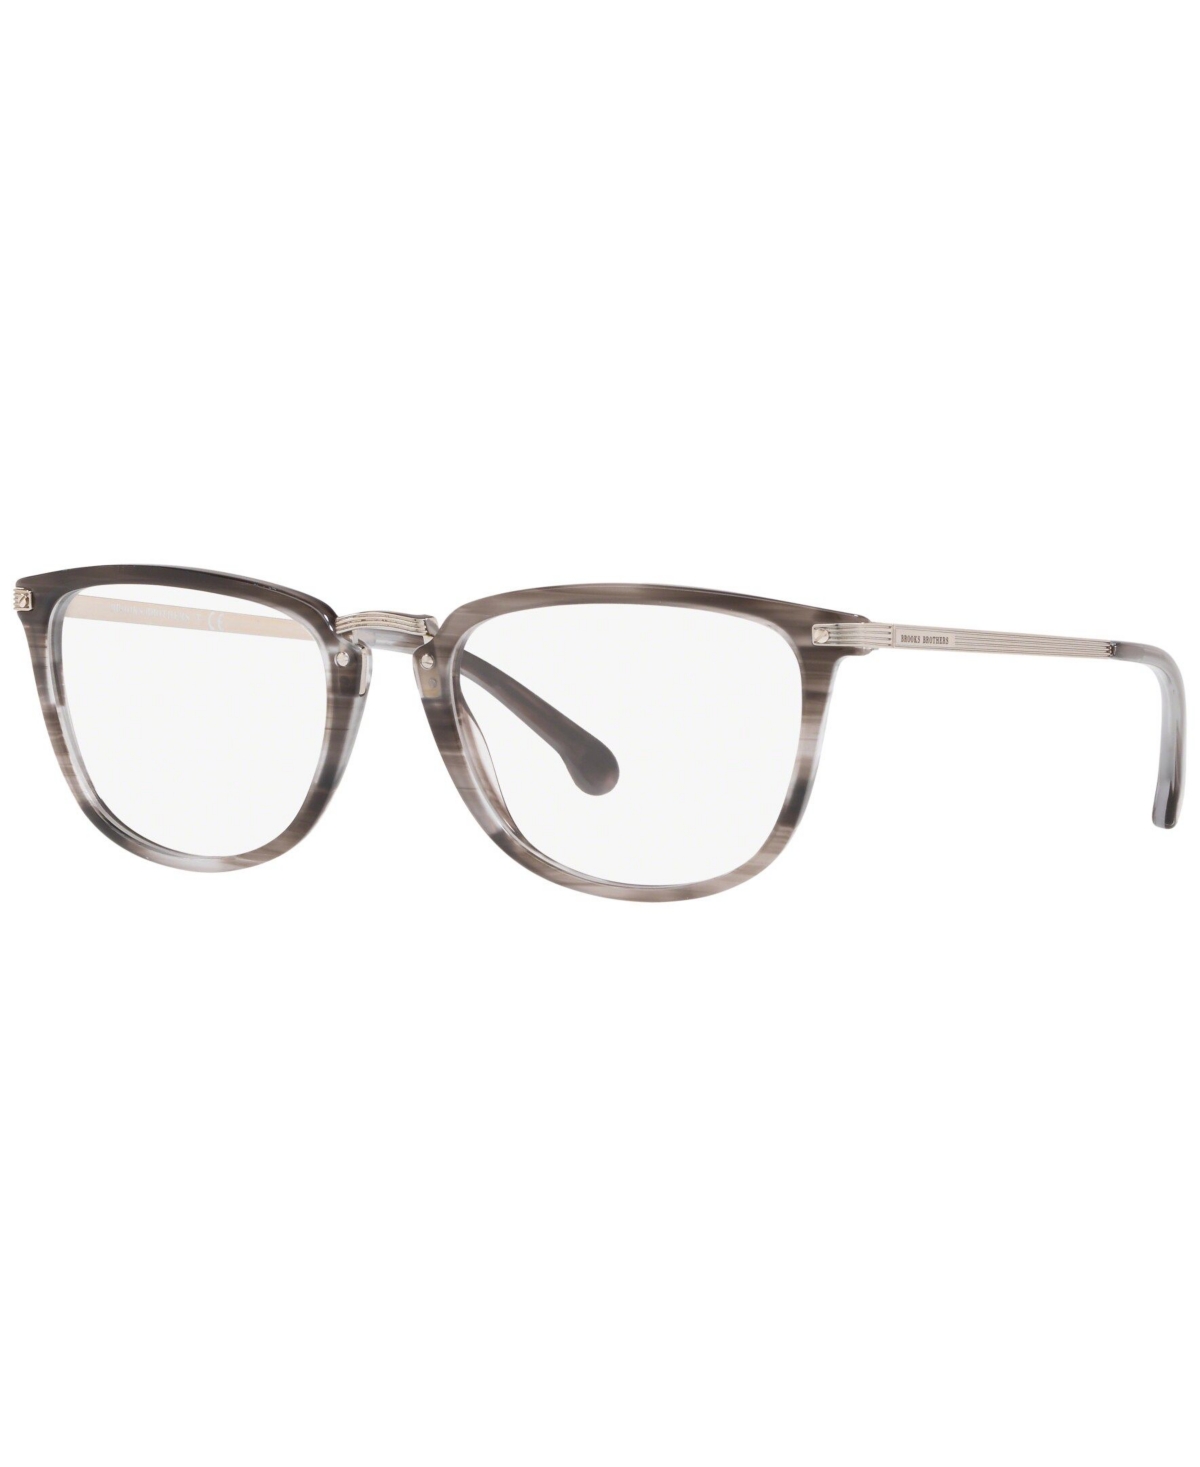 BB2042 Men's Rectangle Eyeglasses - Grey Horn